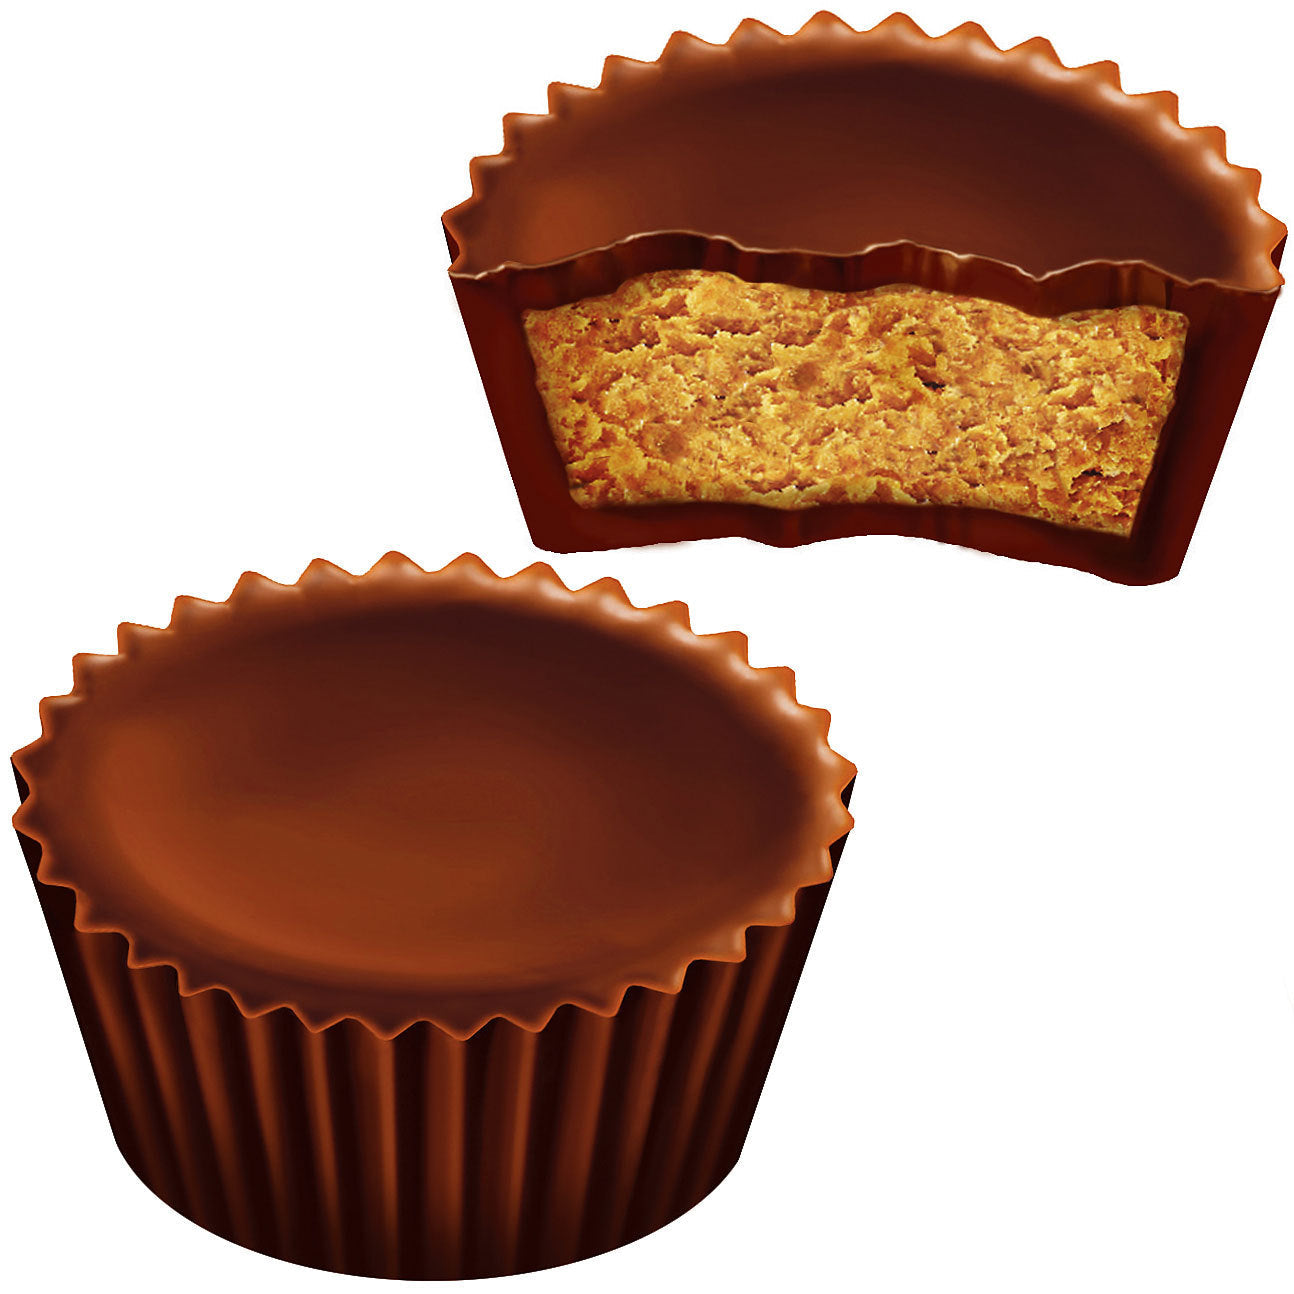 2 chocolats en forme de cup dont un en bas/gauche et l’autre en haut/droite. Celui du dessus est croqué et on y voit une pâte brune claire. Le tout sur fond blanc